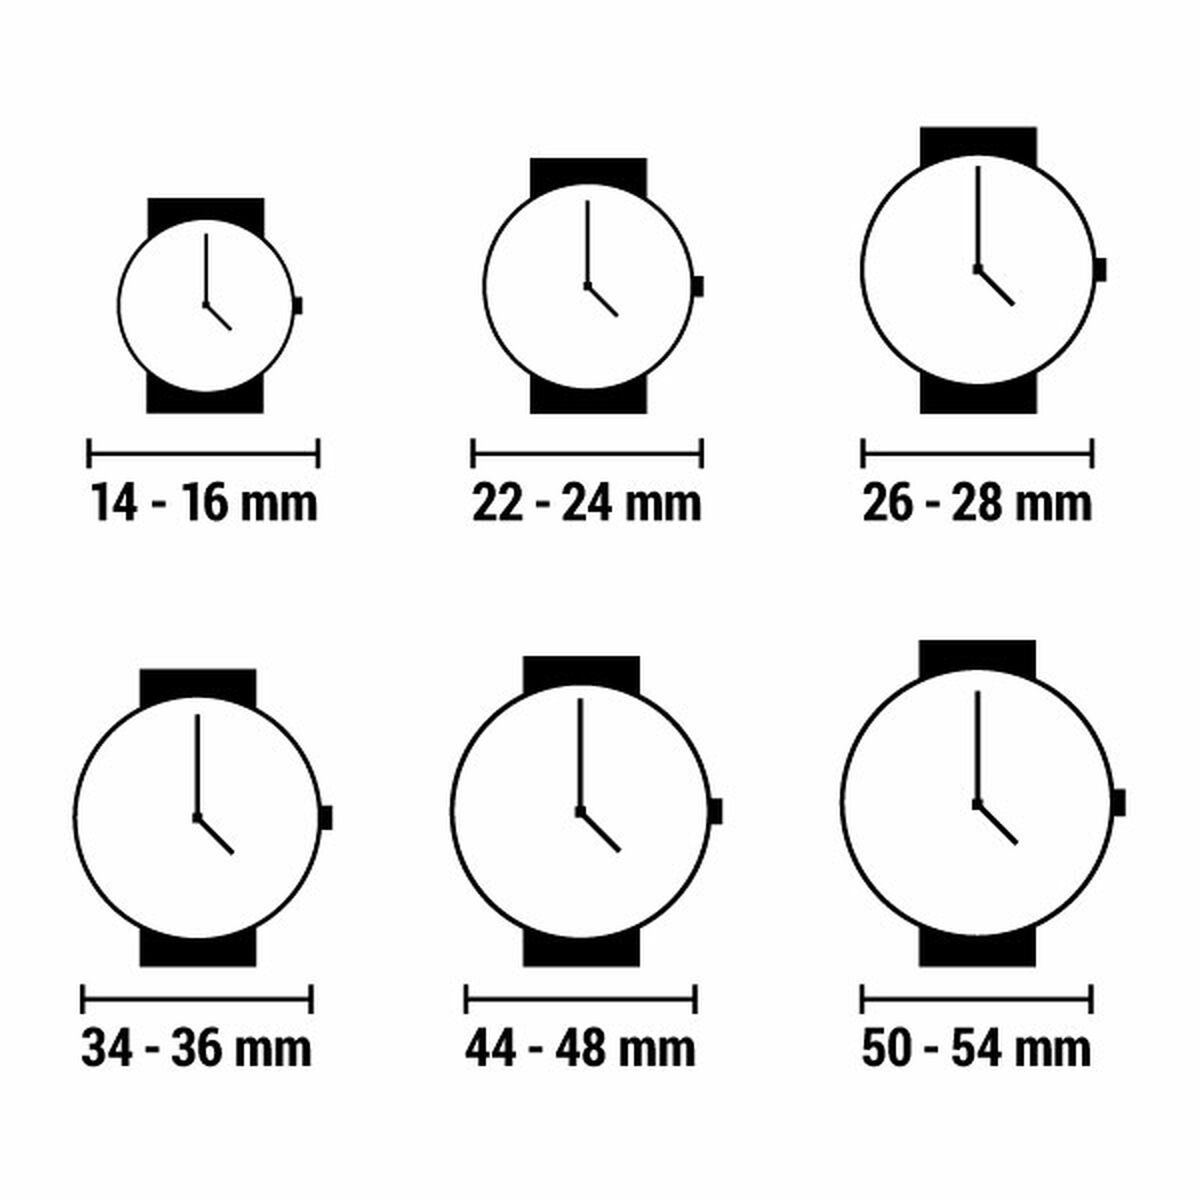 Horloge Dames Guess W0623L4 (Ø 36 mm)